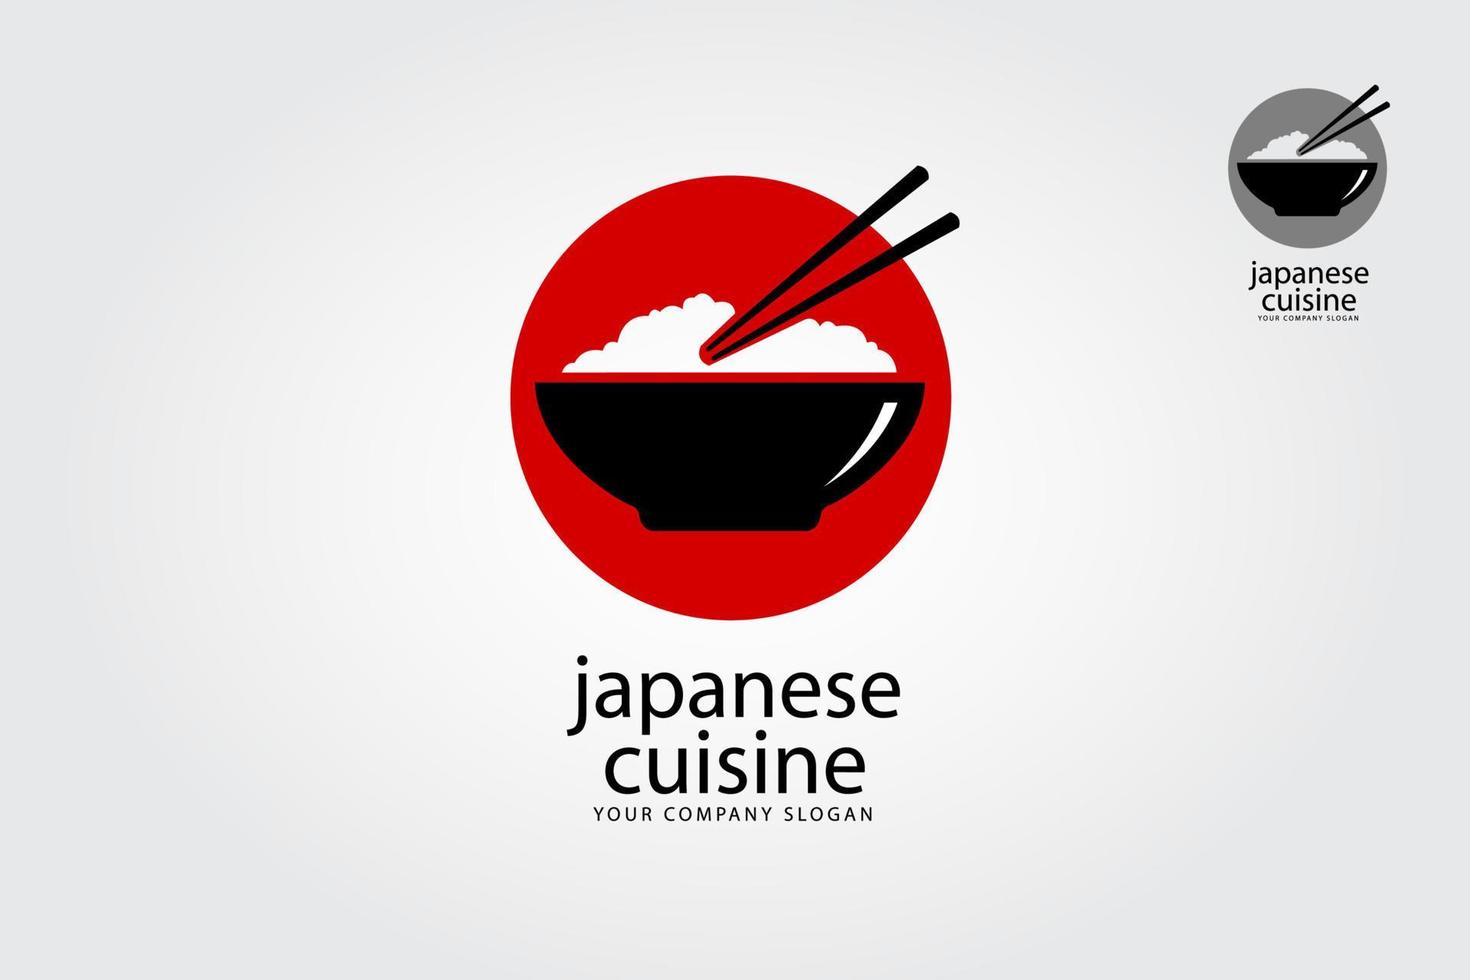 cozinha japonesa é um modelo de logotipo multiuso, pode ser usado em qualquer empresa relacionada a comida asiática, arroz, fast food, restaurantes etc. vetor